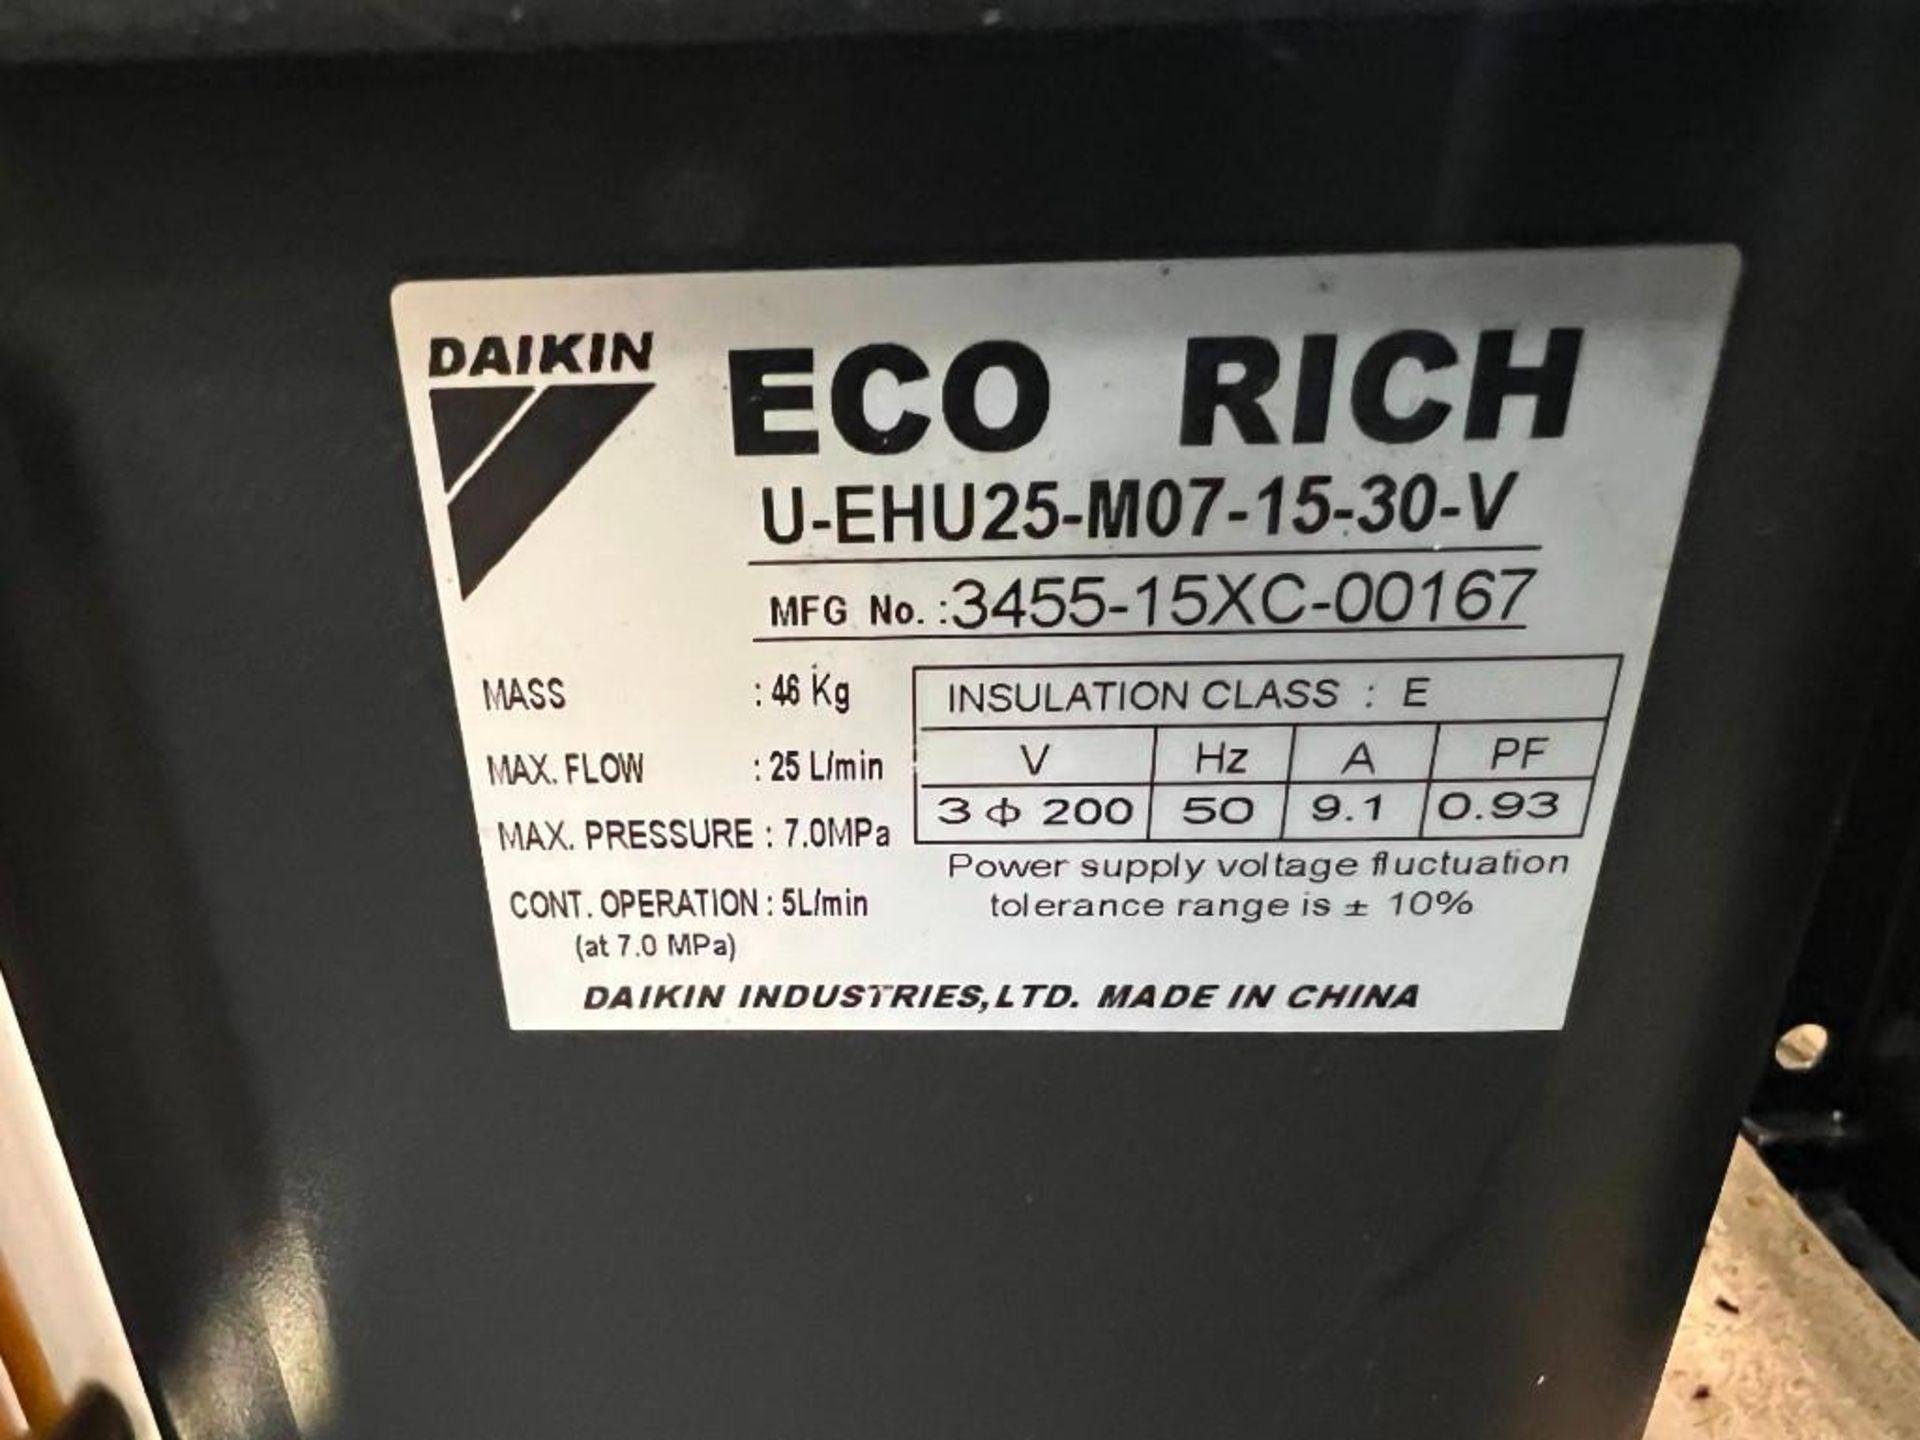 Daikin Eco Rich #U-EHU25-M07-15-30-V / #3455-15XC-00167 Hydraulic Unit - Image 4 of 4